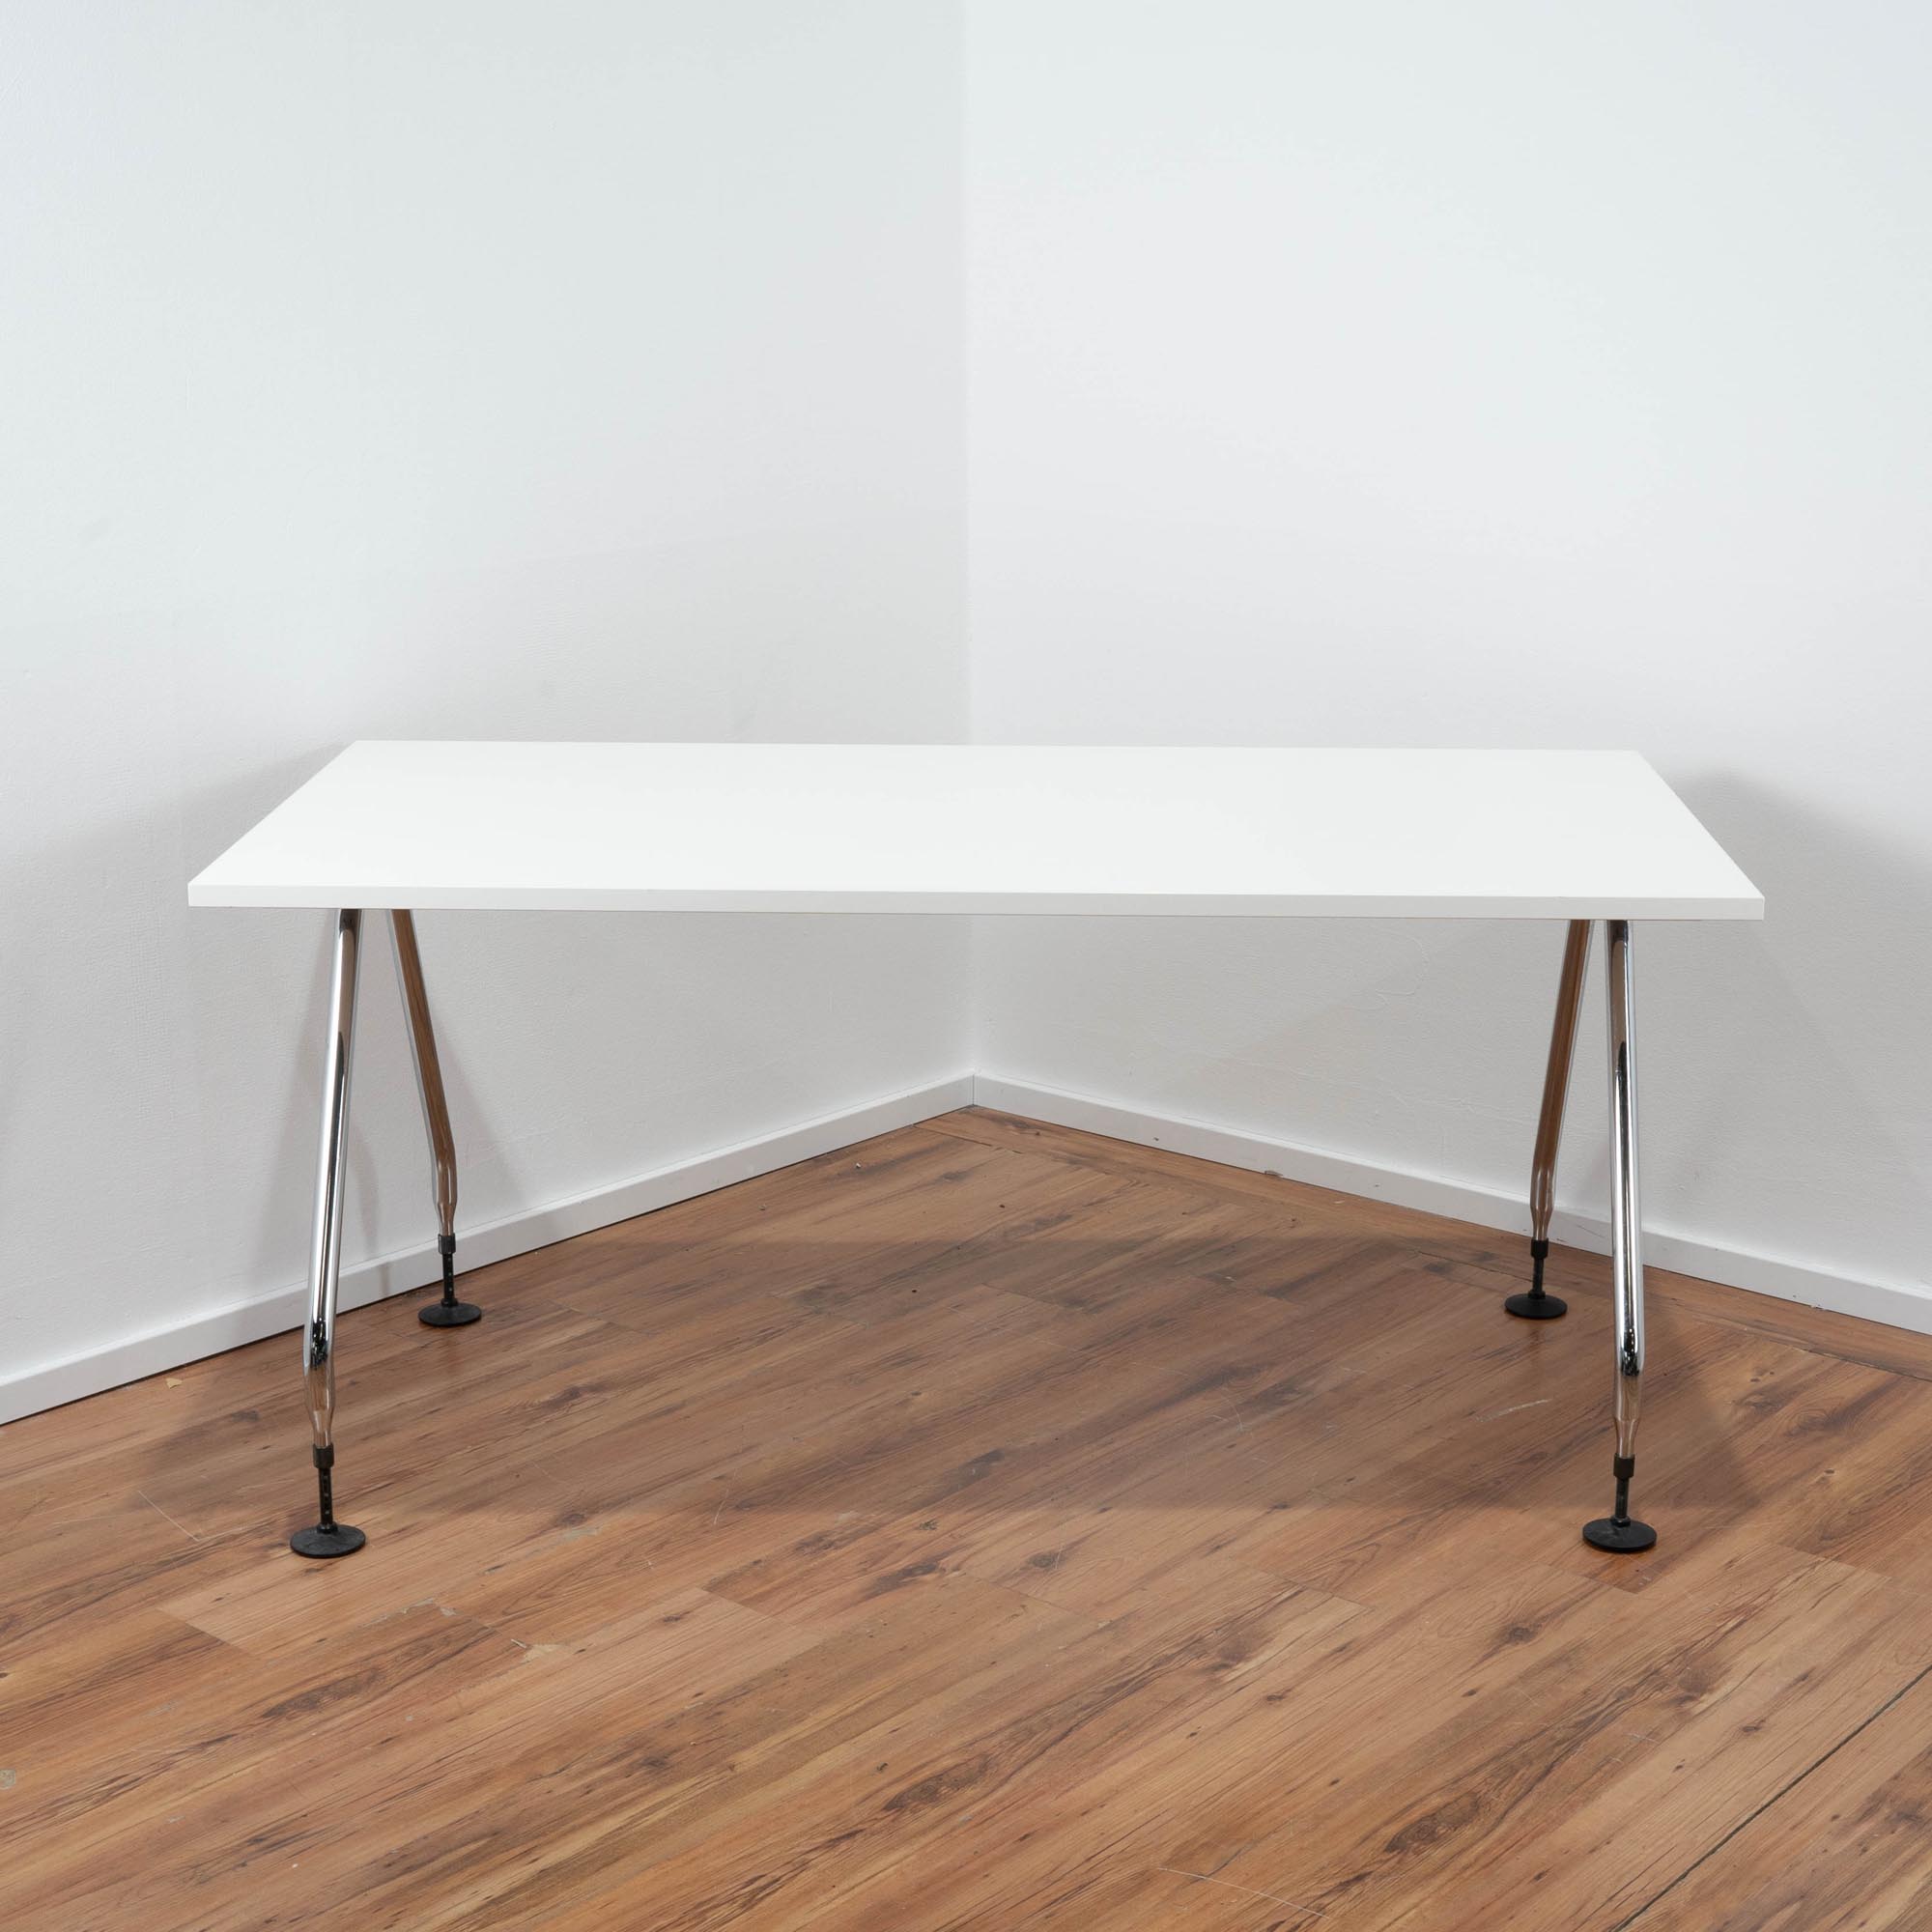 Vitra Schreibtisch - Platte weiß - 4-Fuß Gestell - höhenverstellbar an den Füßen